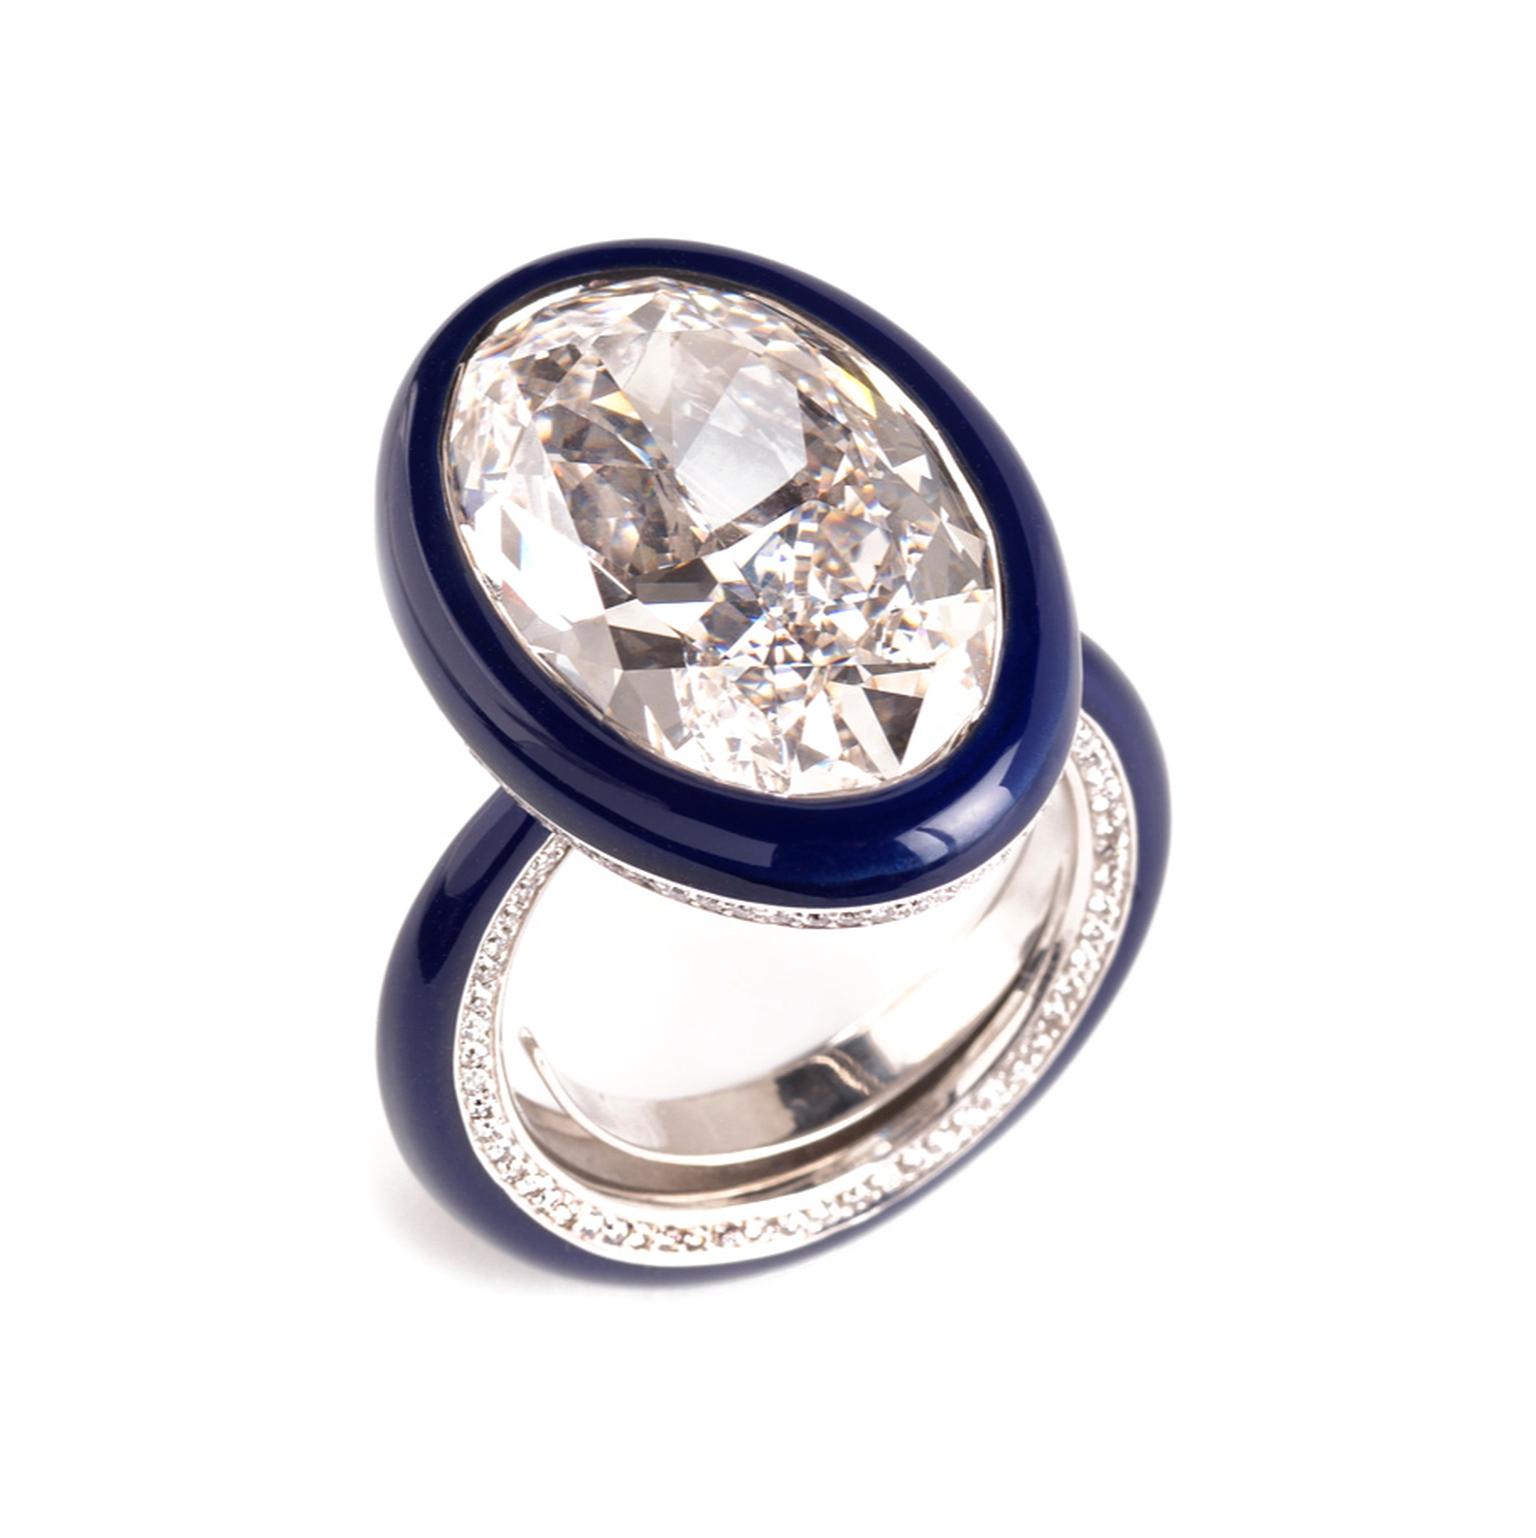 Glen Spiro diamond ring in blue ceramic